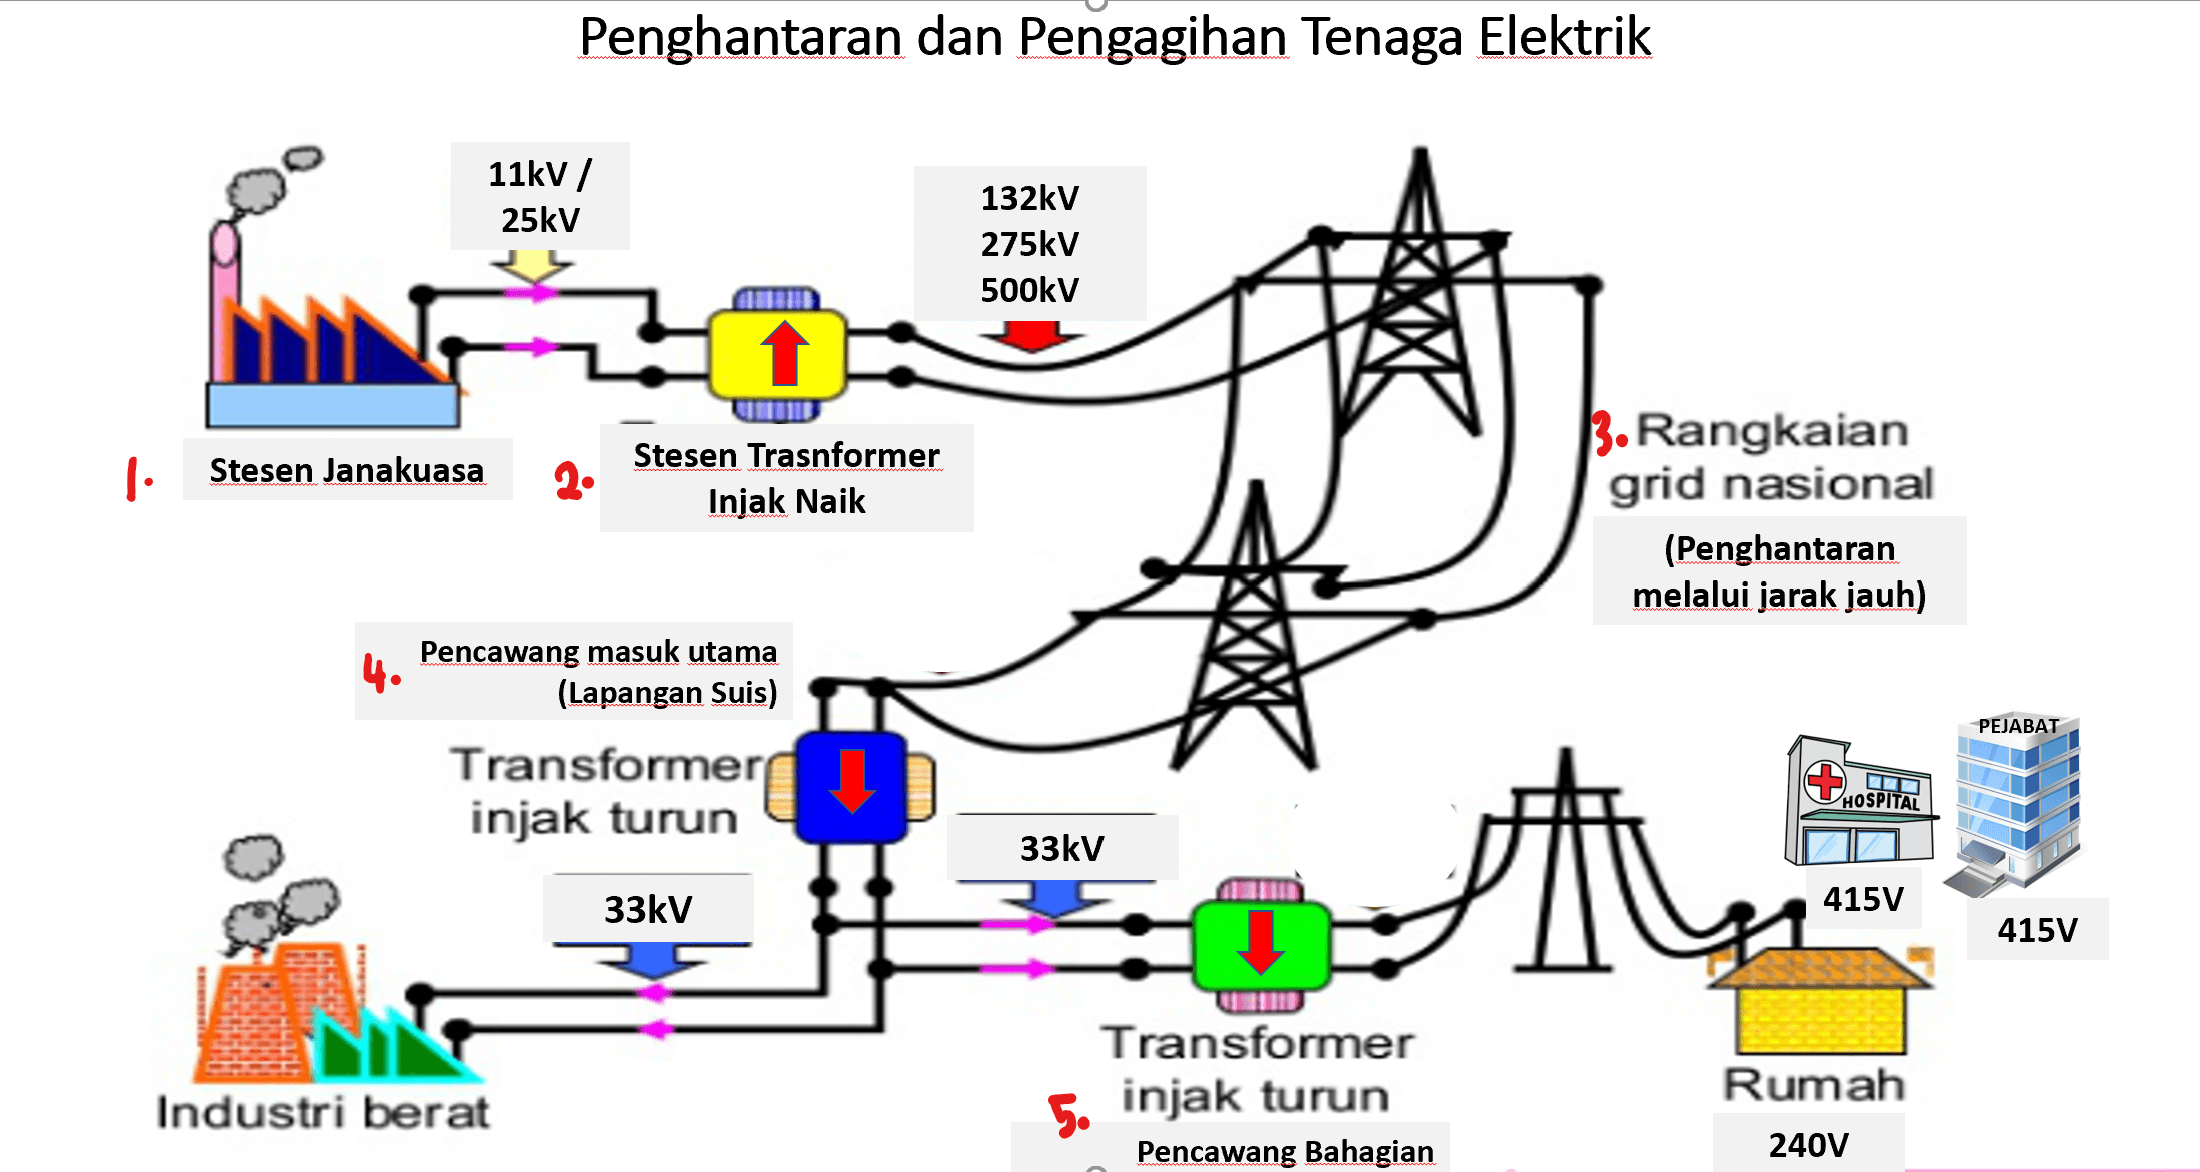 Penghantaran dan pengagihan tenaga elektrik